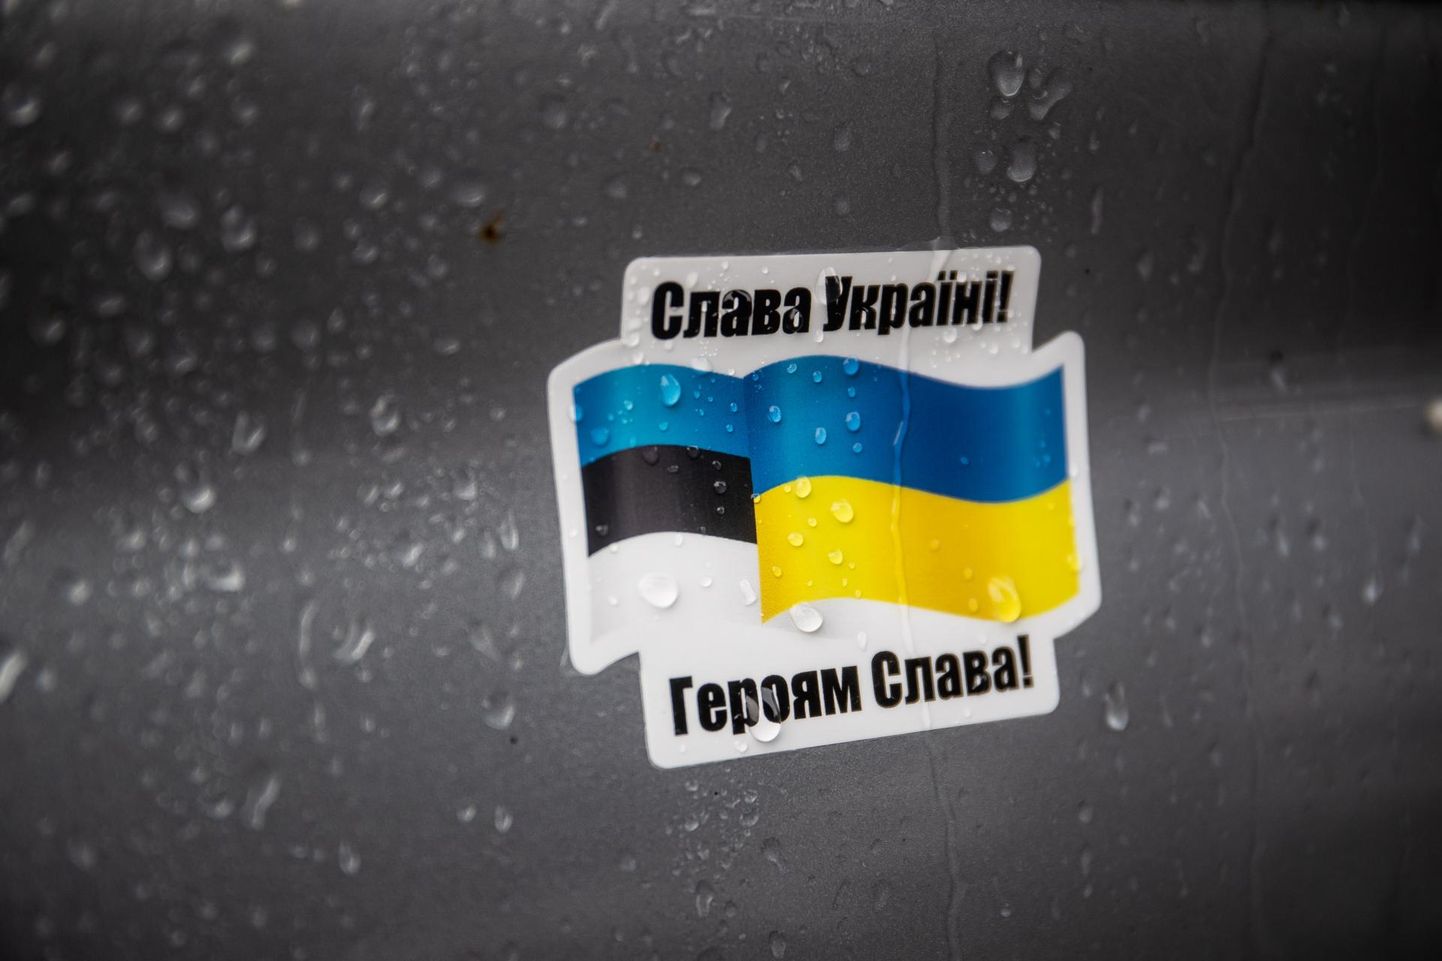 Ukrainas viibivatel Eesti kodanikel, kes soovivad sealt lahkuda, palutakse riigist lahkuda esimesel võimalusel ja pöörduda tagasi Eestisse.